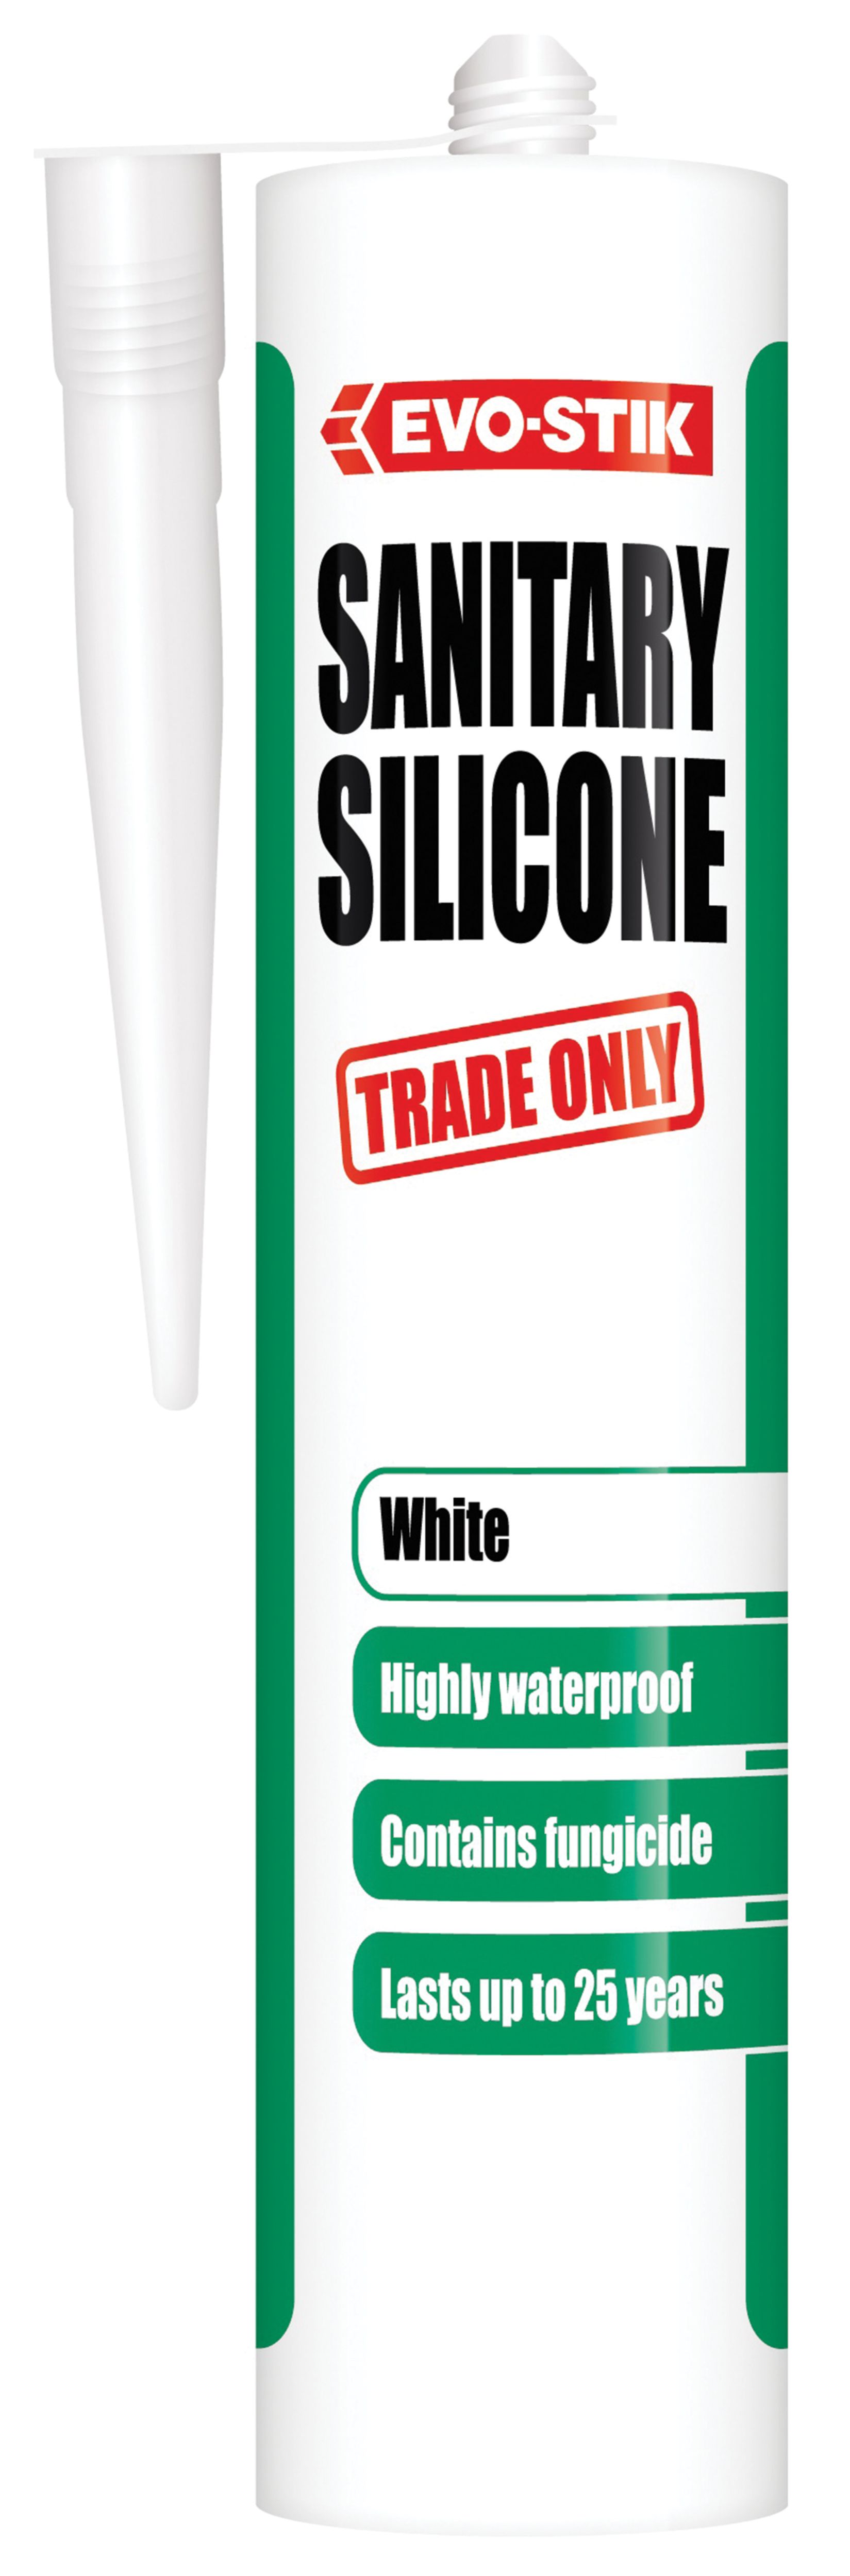 Evo-Stik Trade Only Sanitary Silicone White Sealant - 280ml